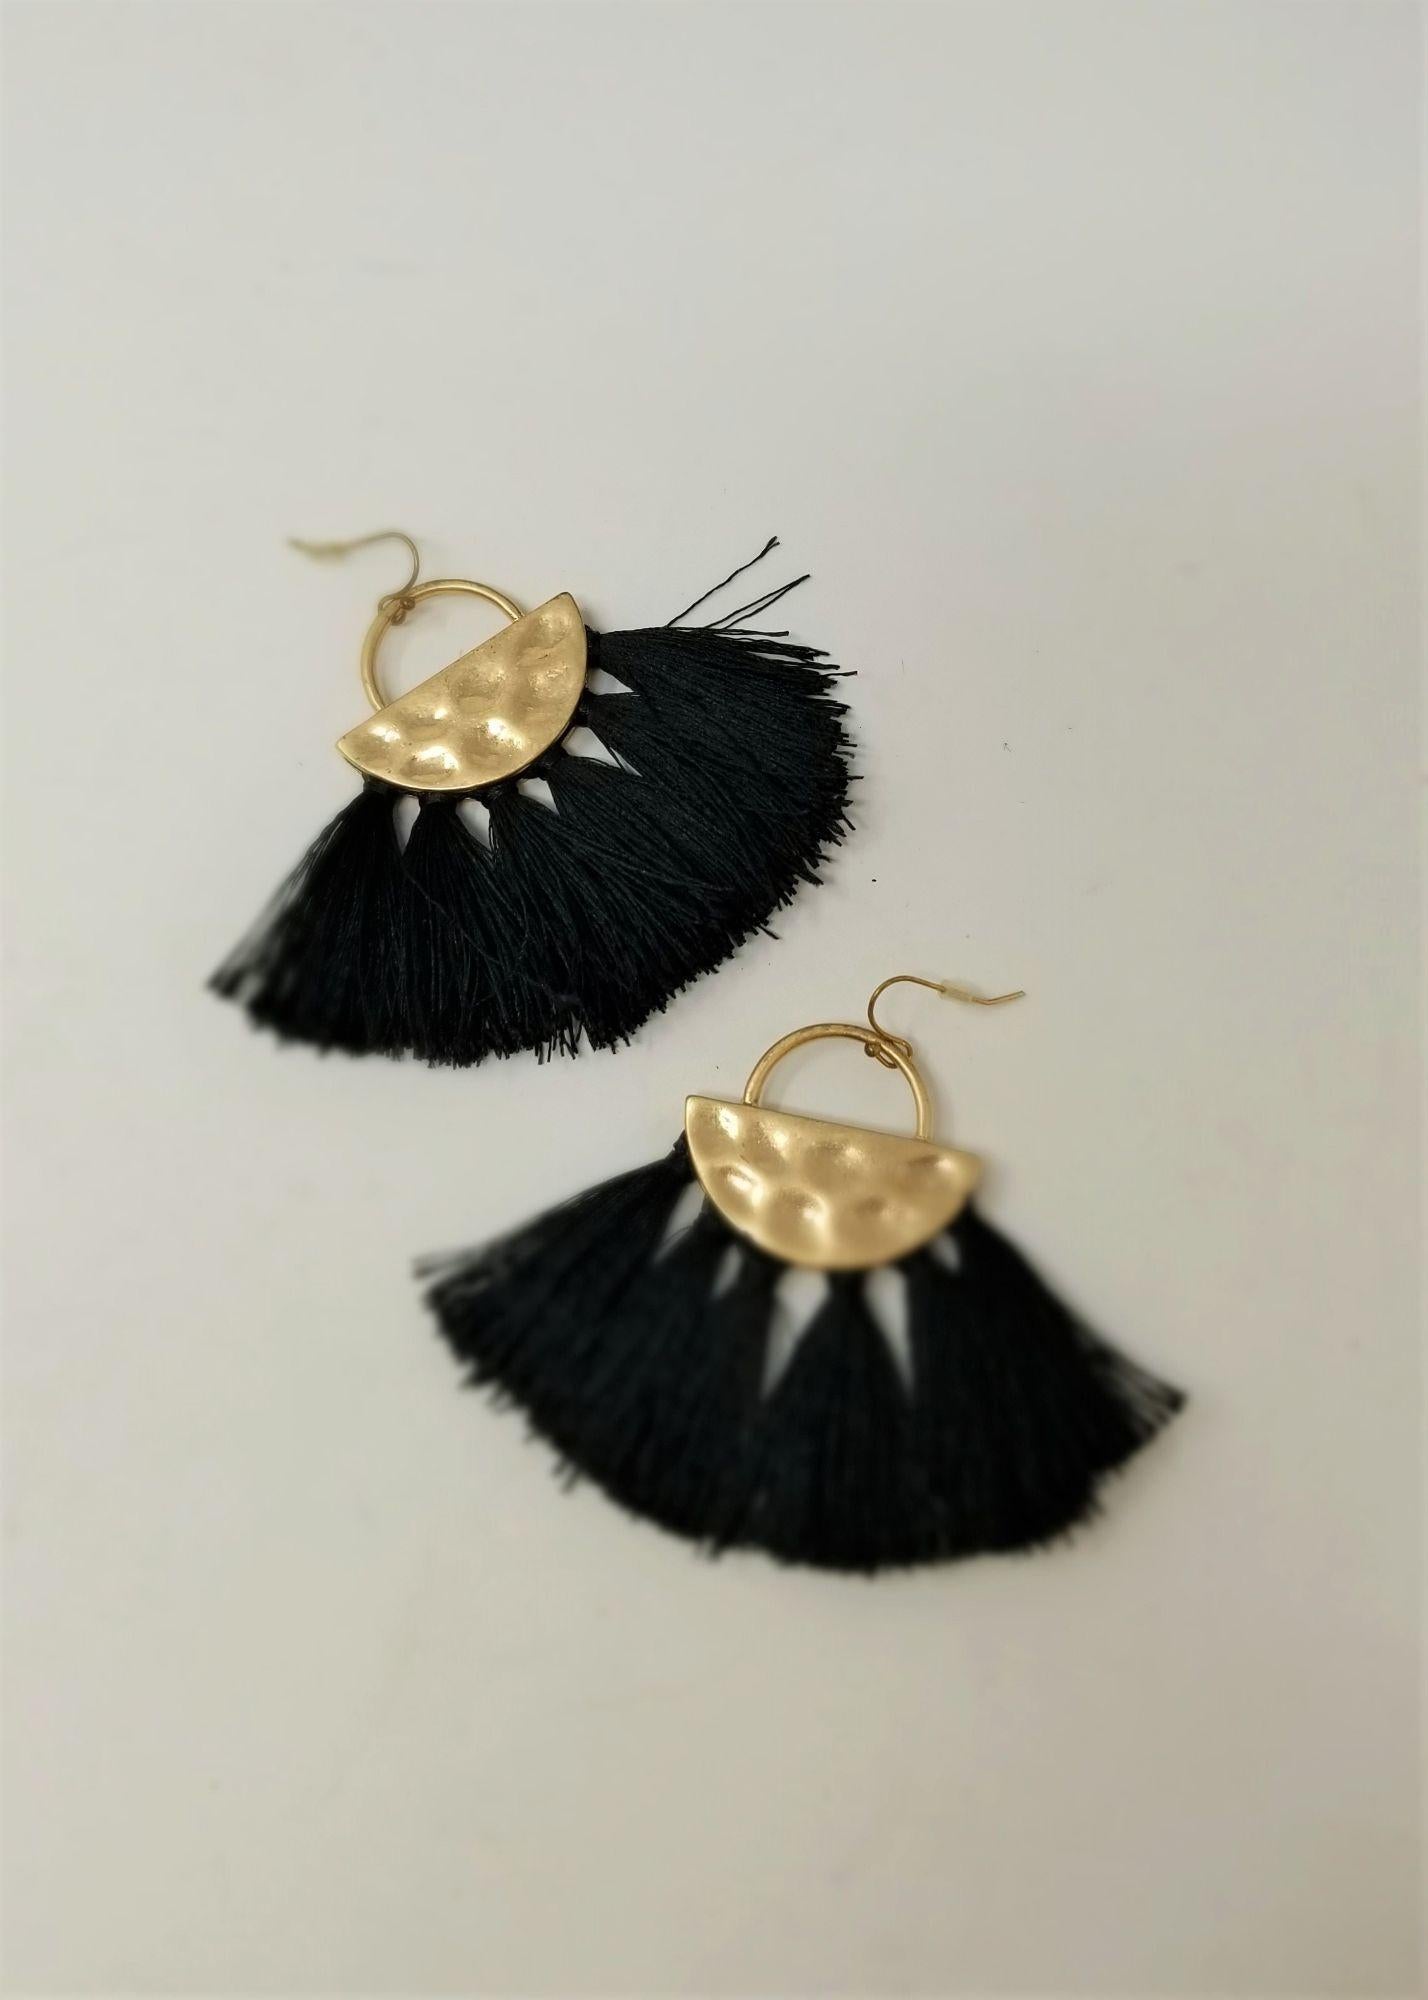 Sassy Large Black Tassel Pierced Earrings Hammered Gold